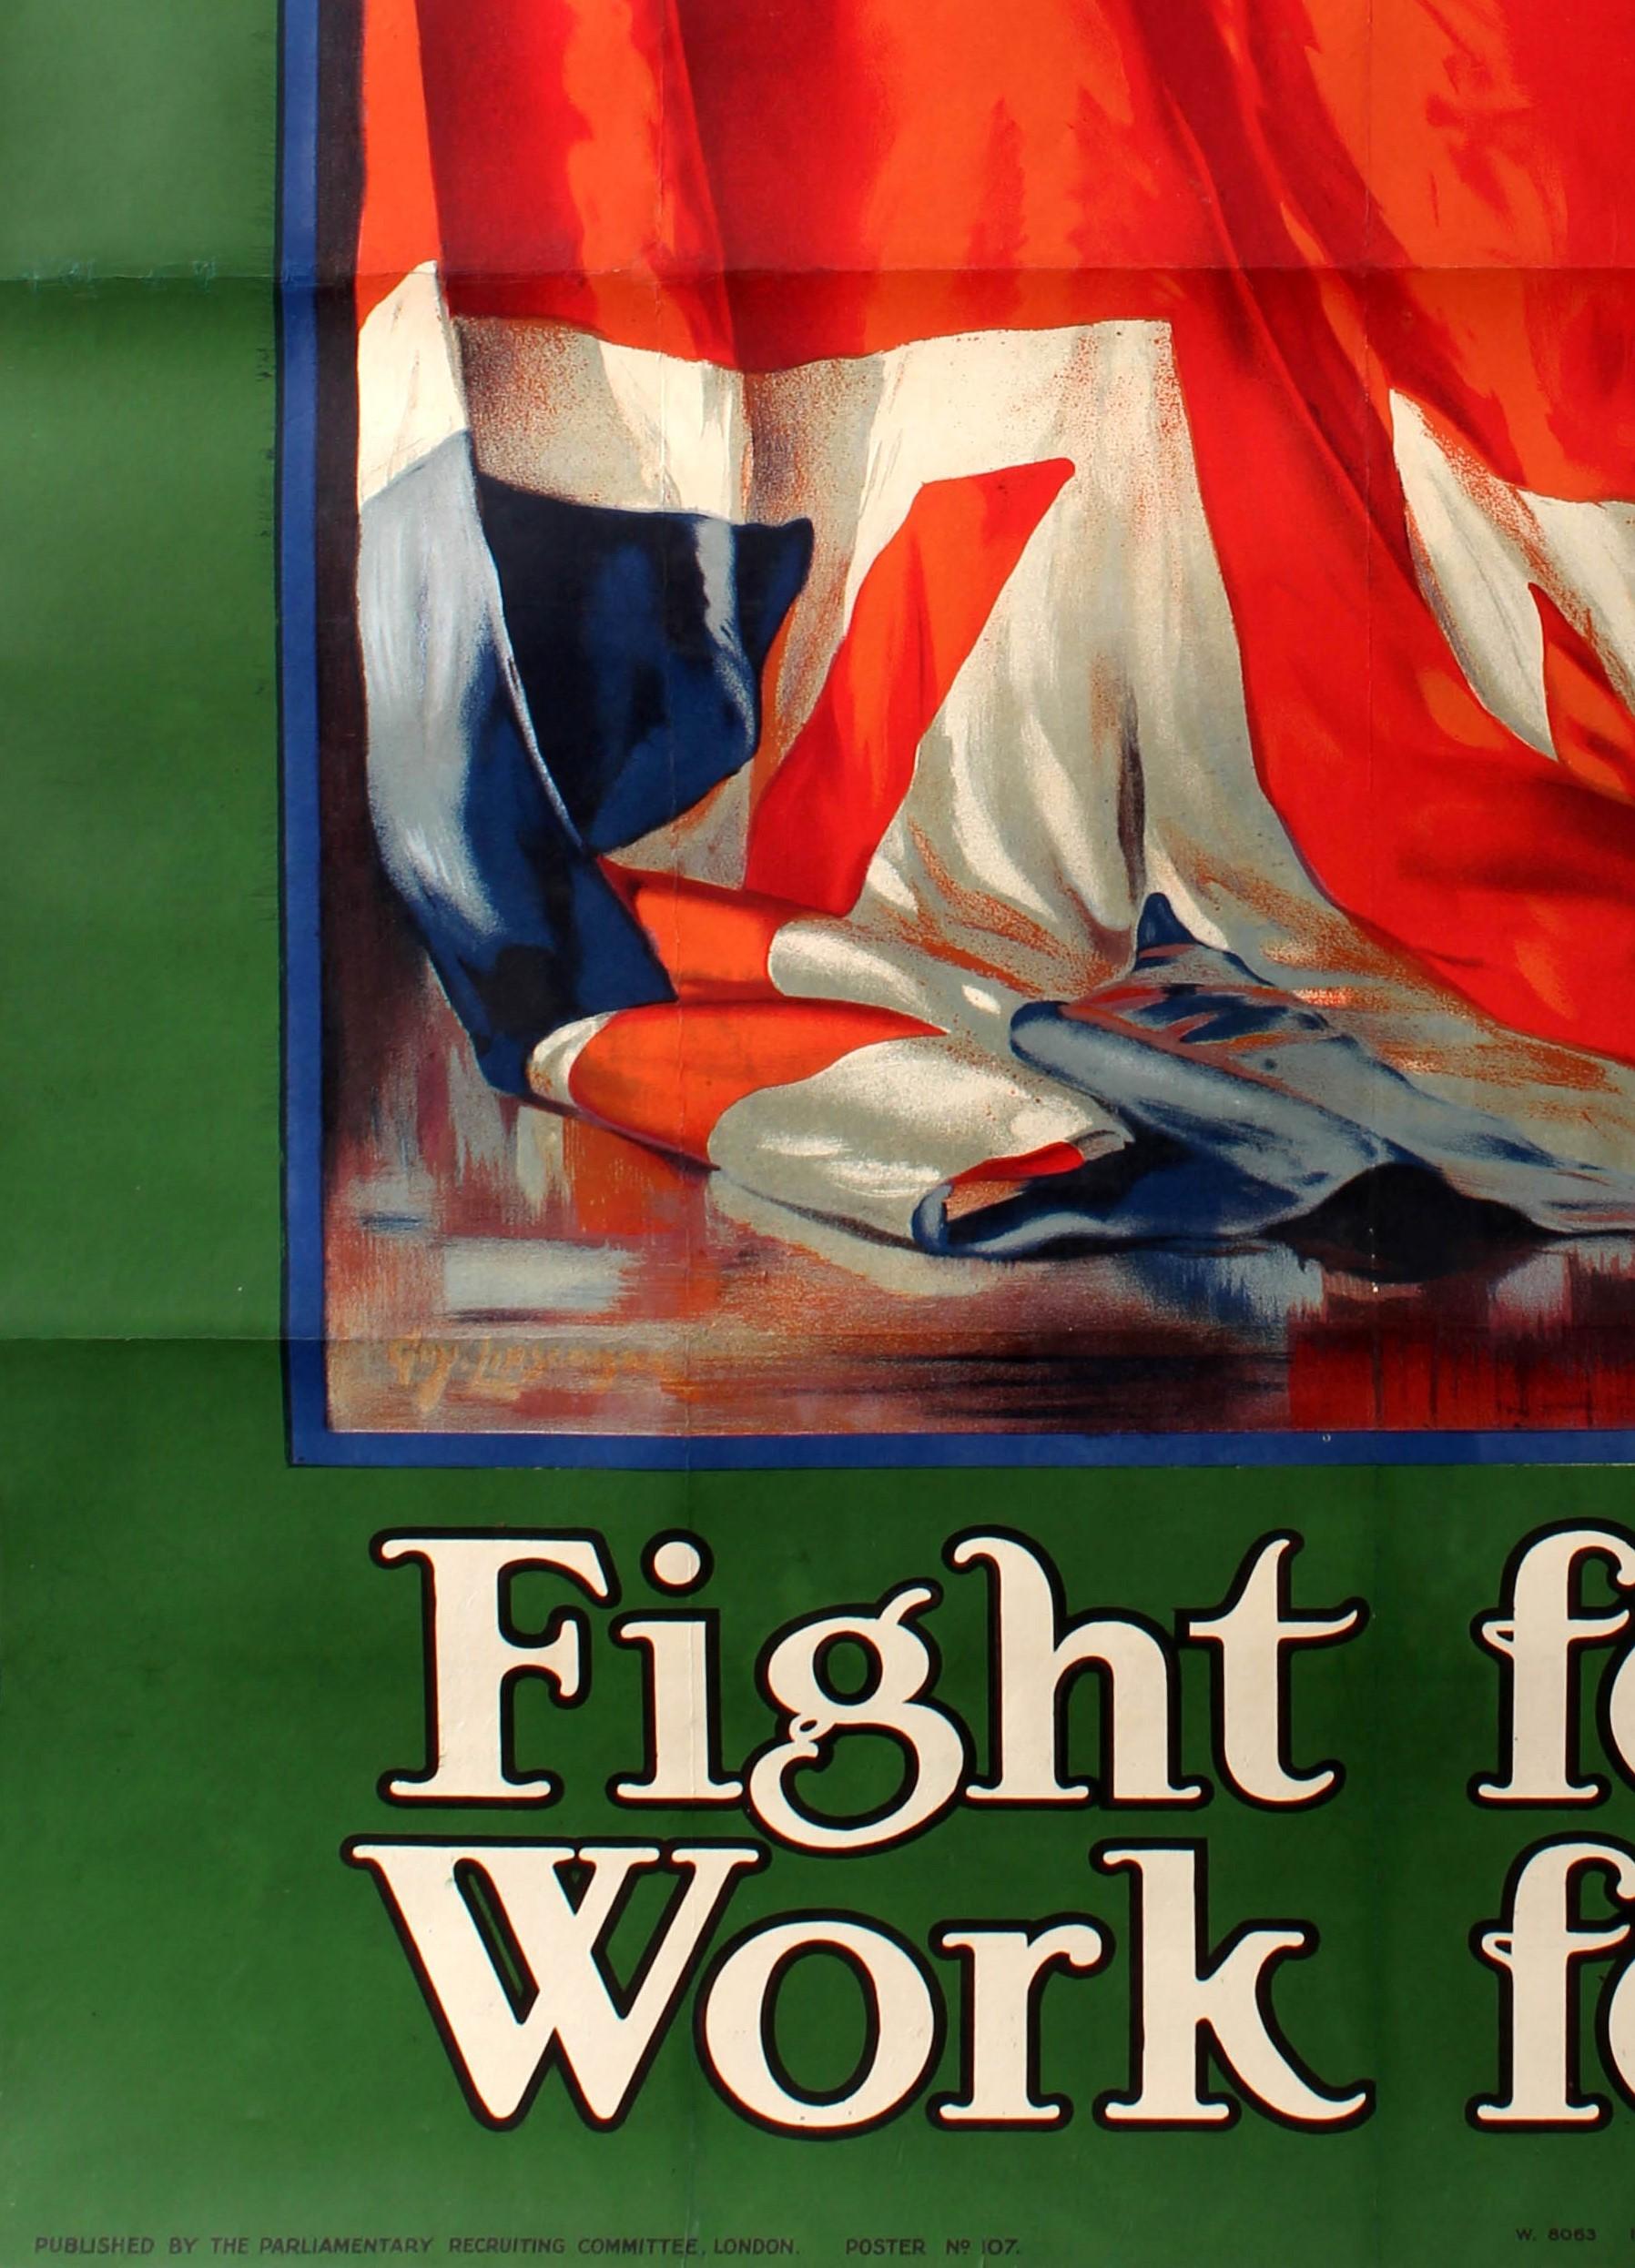 Originales antikes britisches Rekrutierungsplakat für den Ersten Weltkrieg mit einem Gemälde der Union-Jack-Flagge in einem blauen Rahmen und grüner Umrandung, der stilisierte Text in Weiß und Schwarz oben und unten - It's our flag Fight for it Work